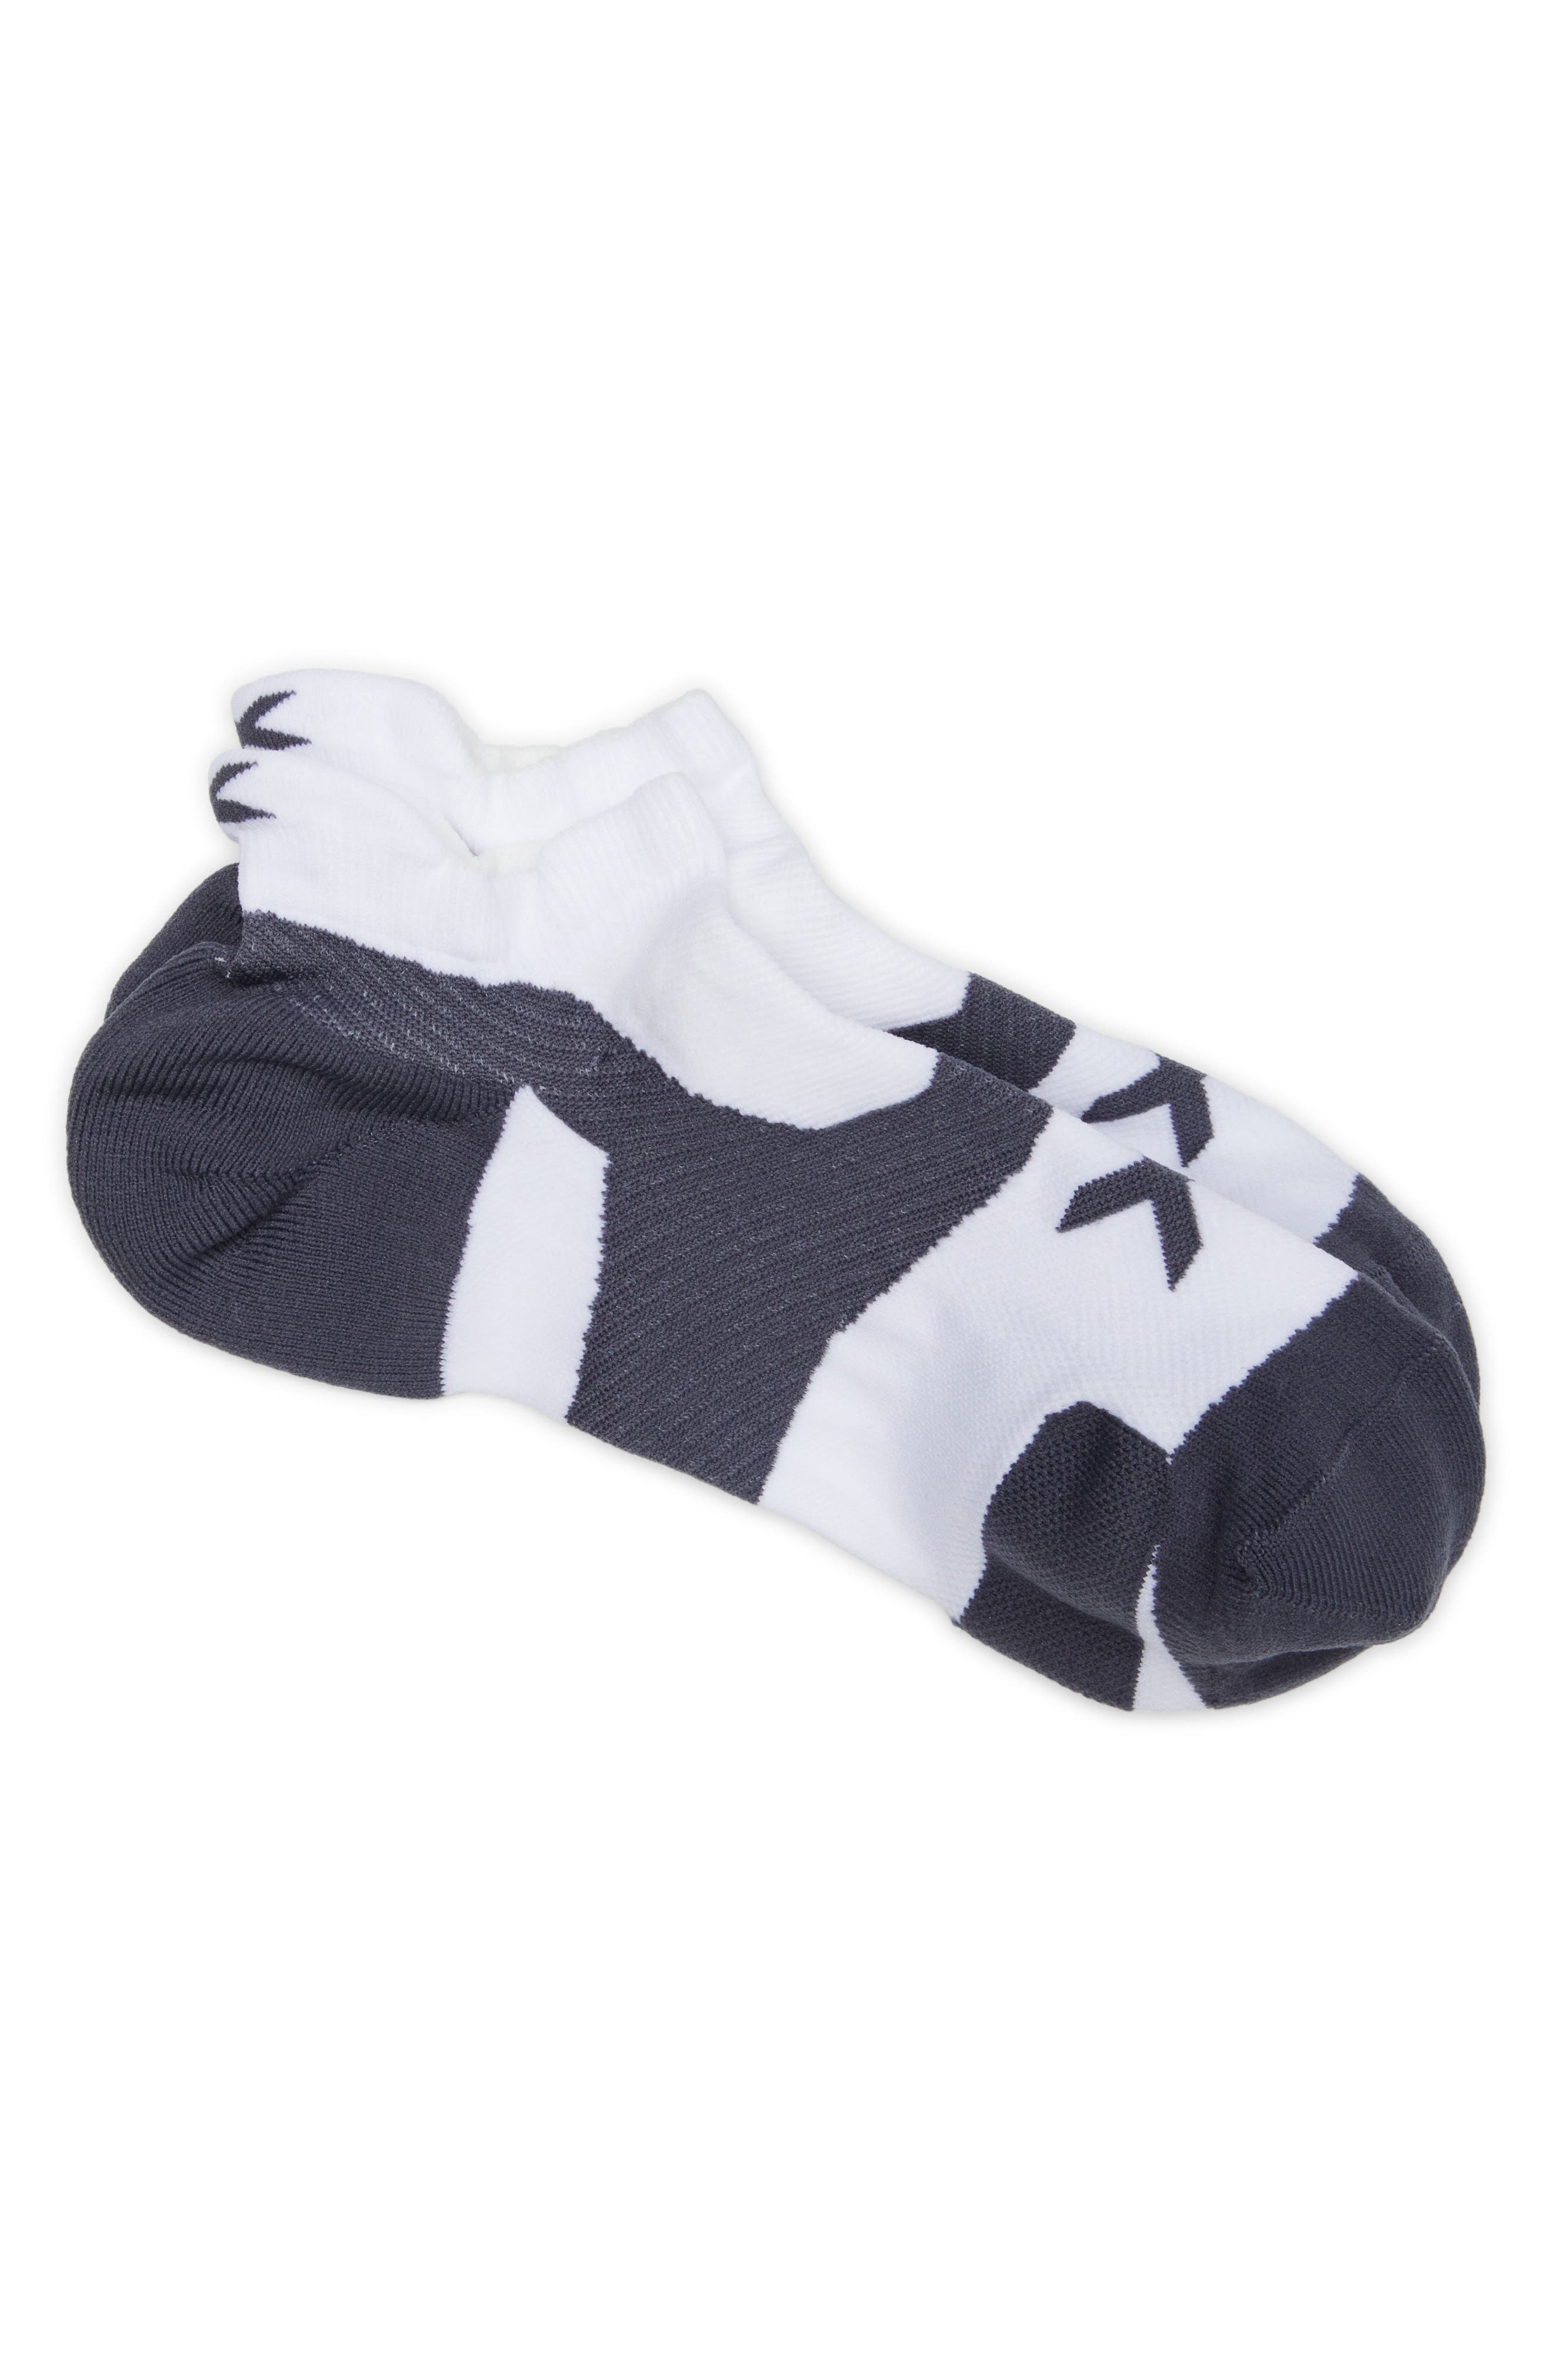 2XU Vectr Cushion No Show Socks Calze Unisex adulto